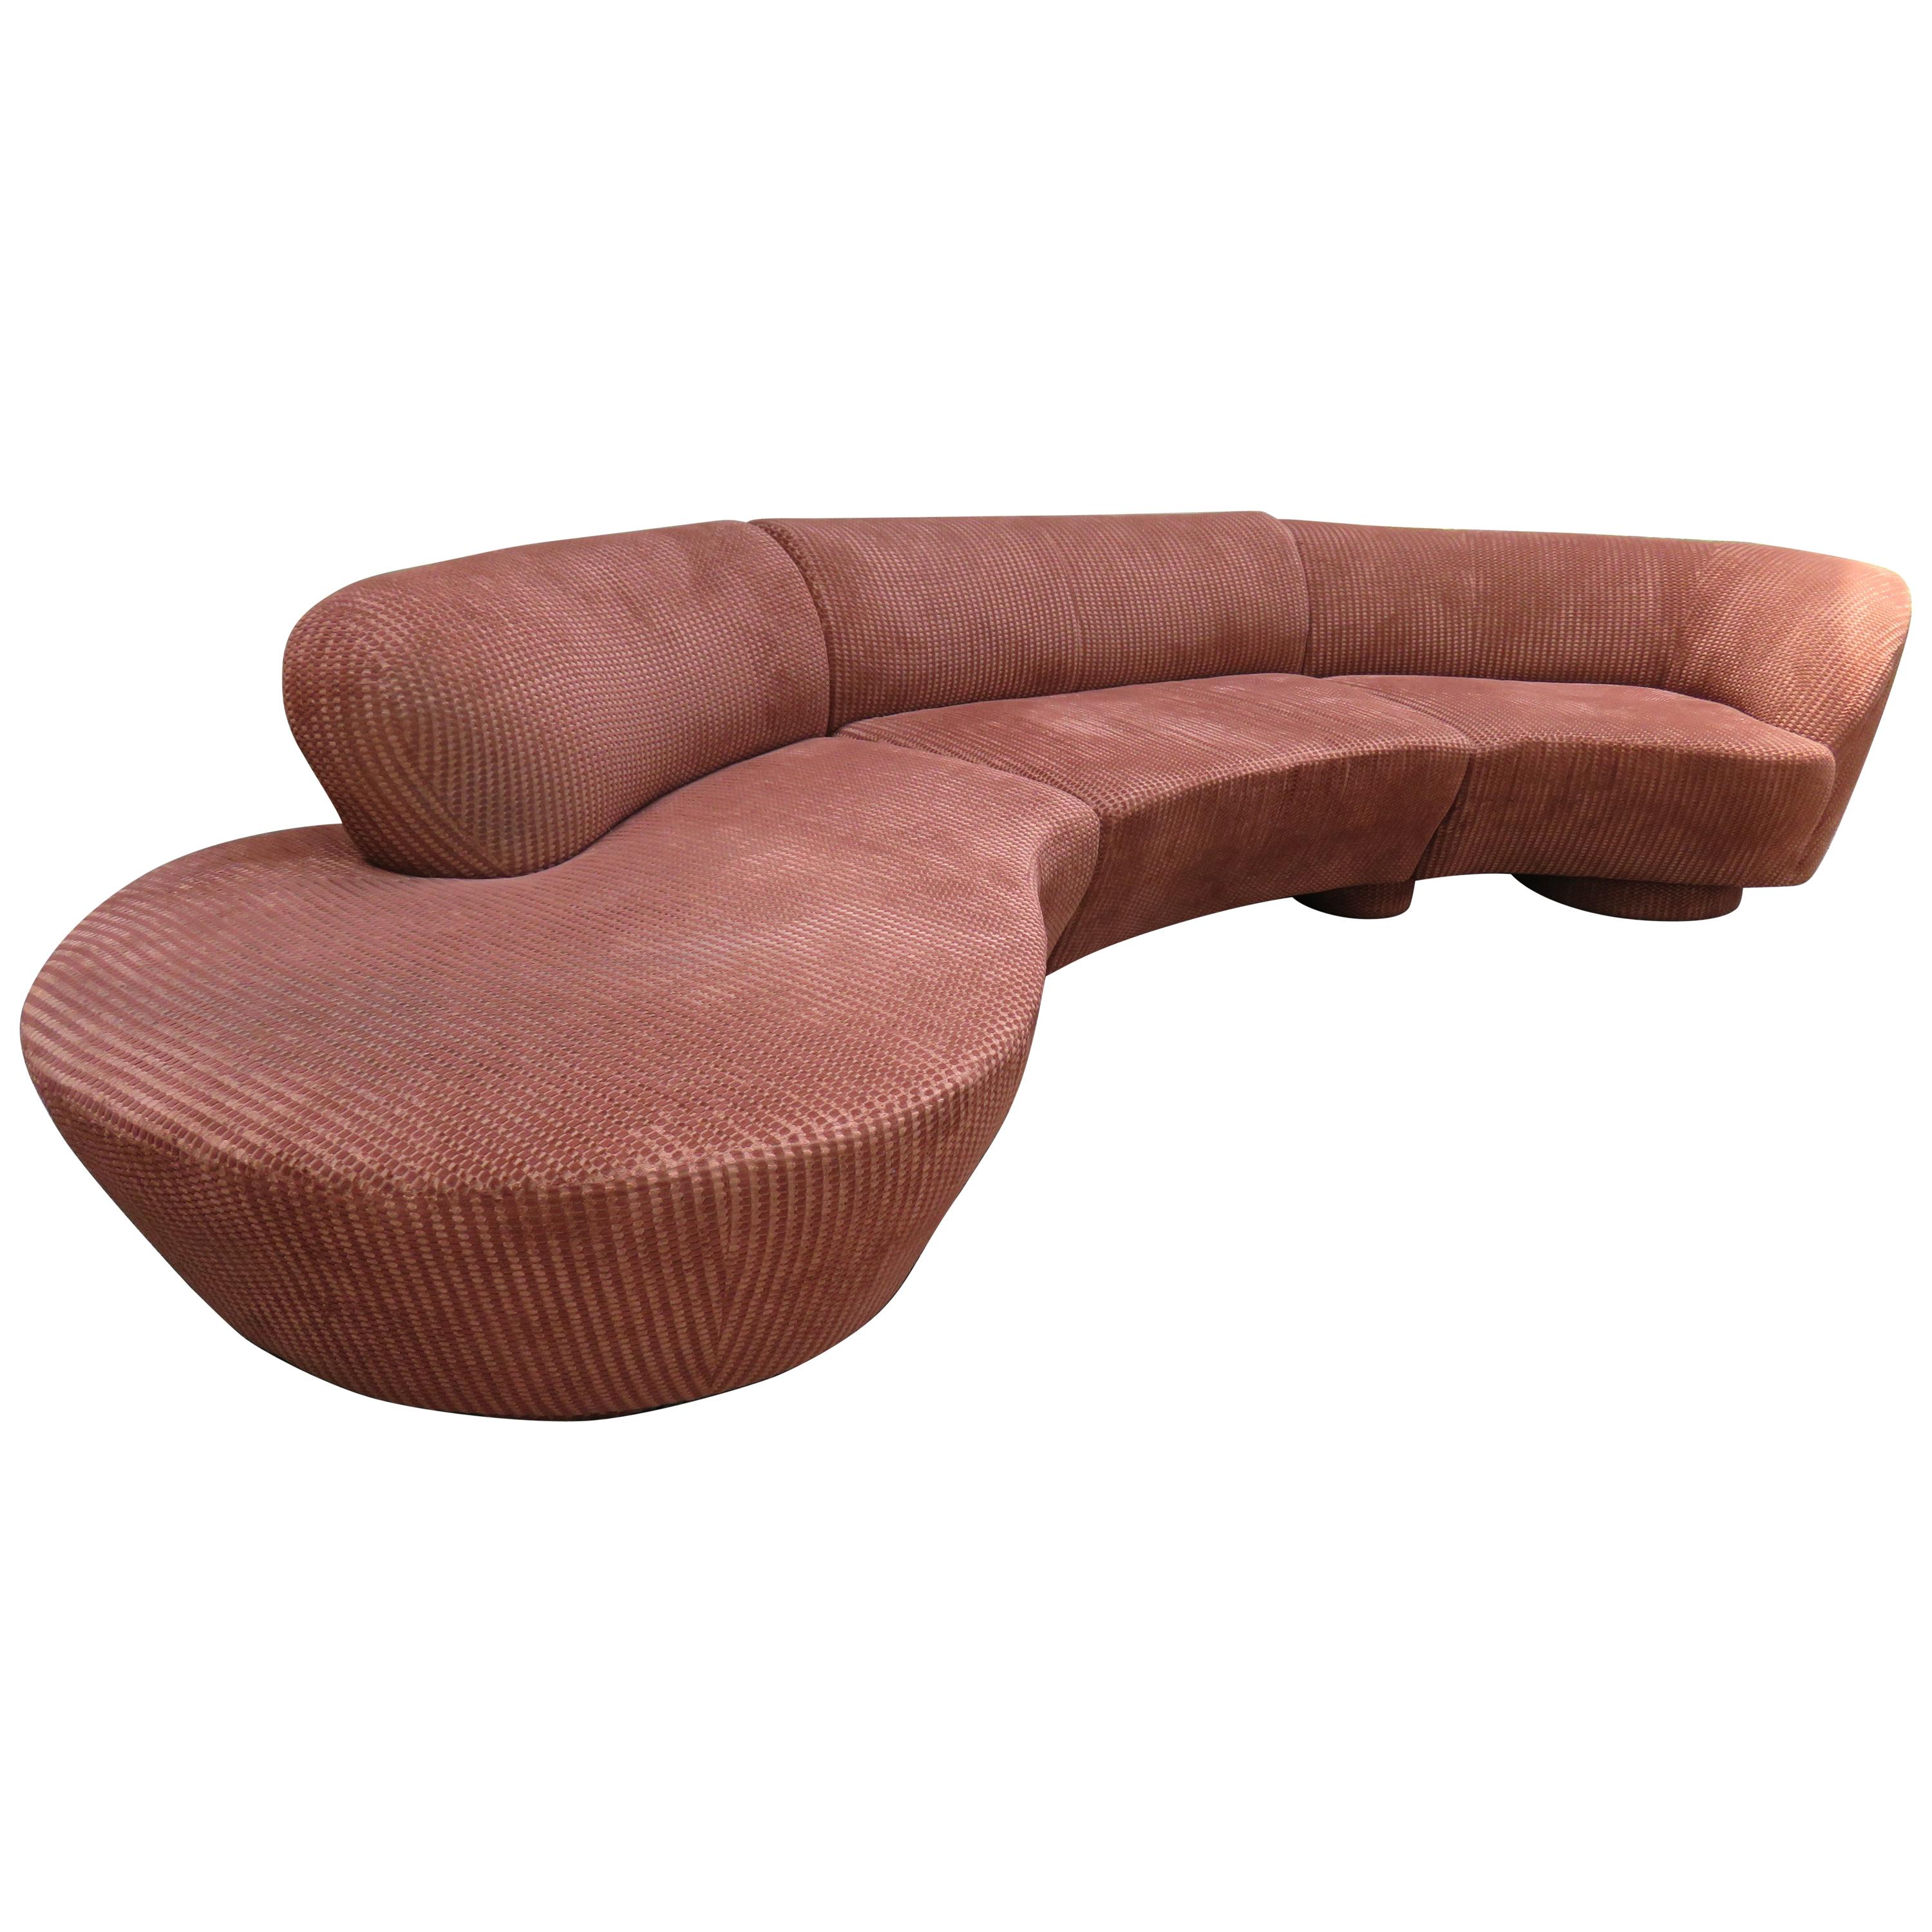 Spectacular Vladimir Kagan Curved 3-Piece Cloud Sofa Sectional Directional